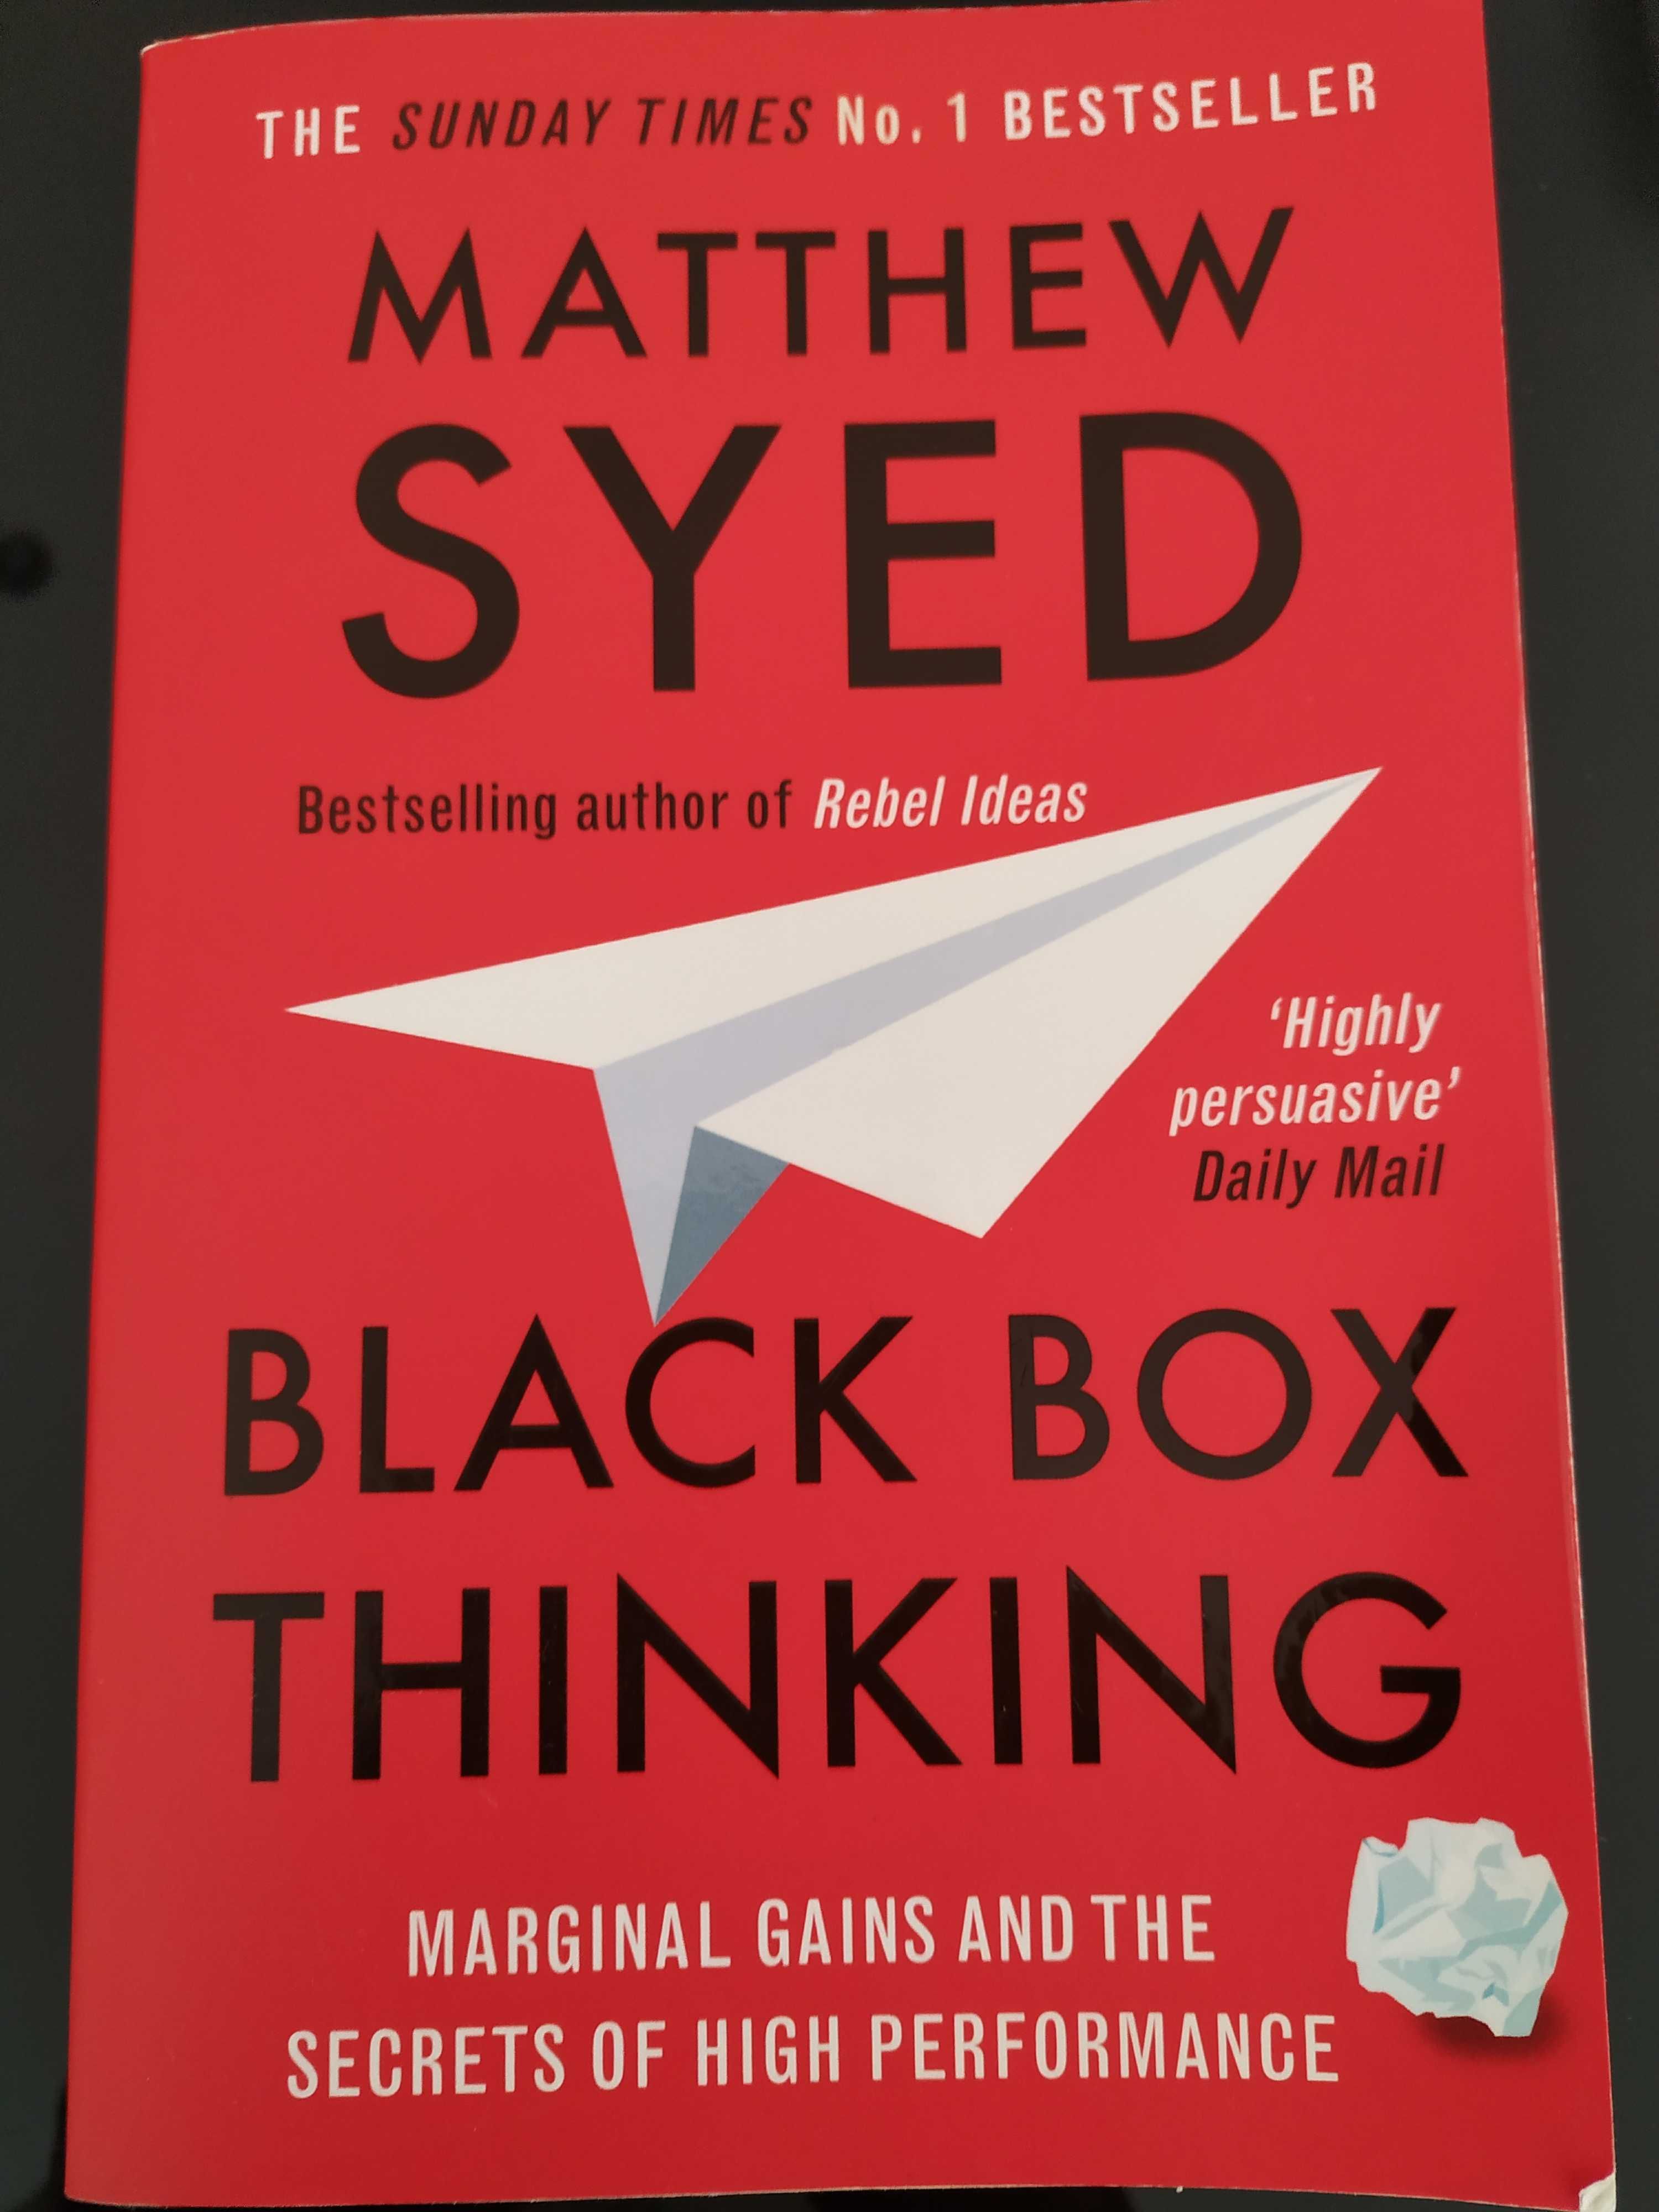 Livro "Black Box Thinking"